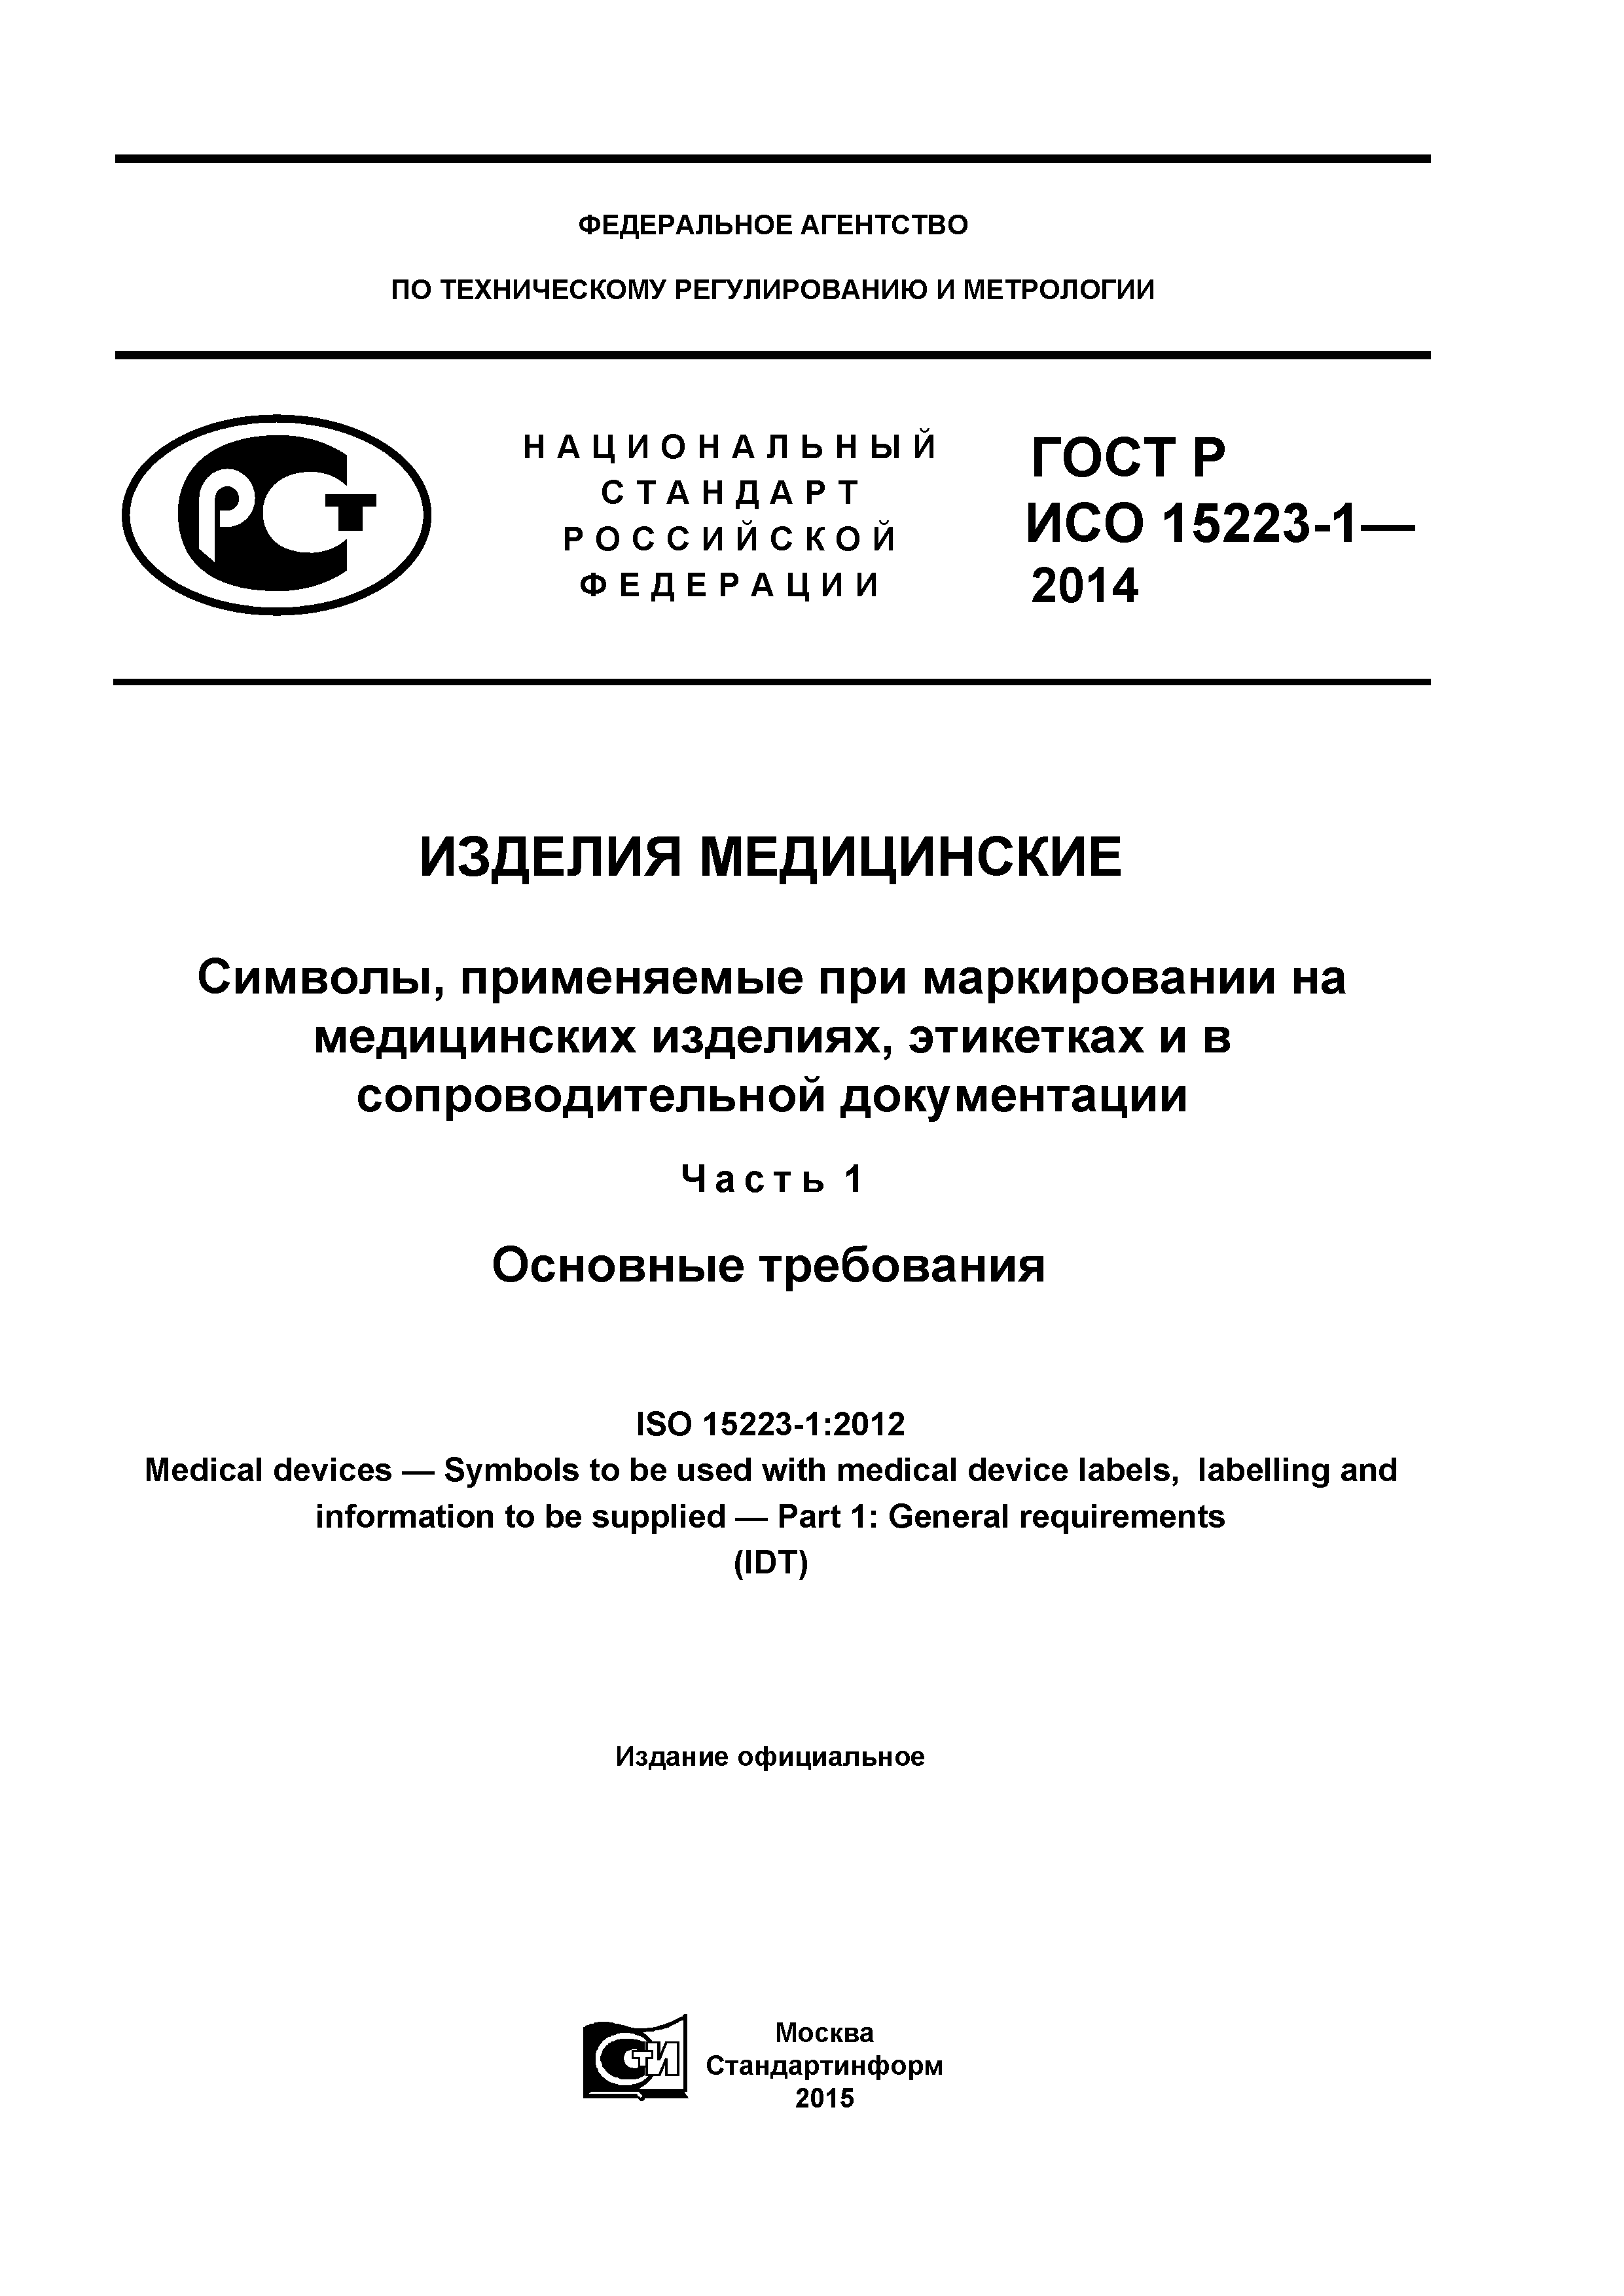 ГОСТ Р ИСО 15223-1-2014